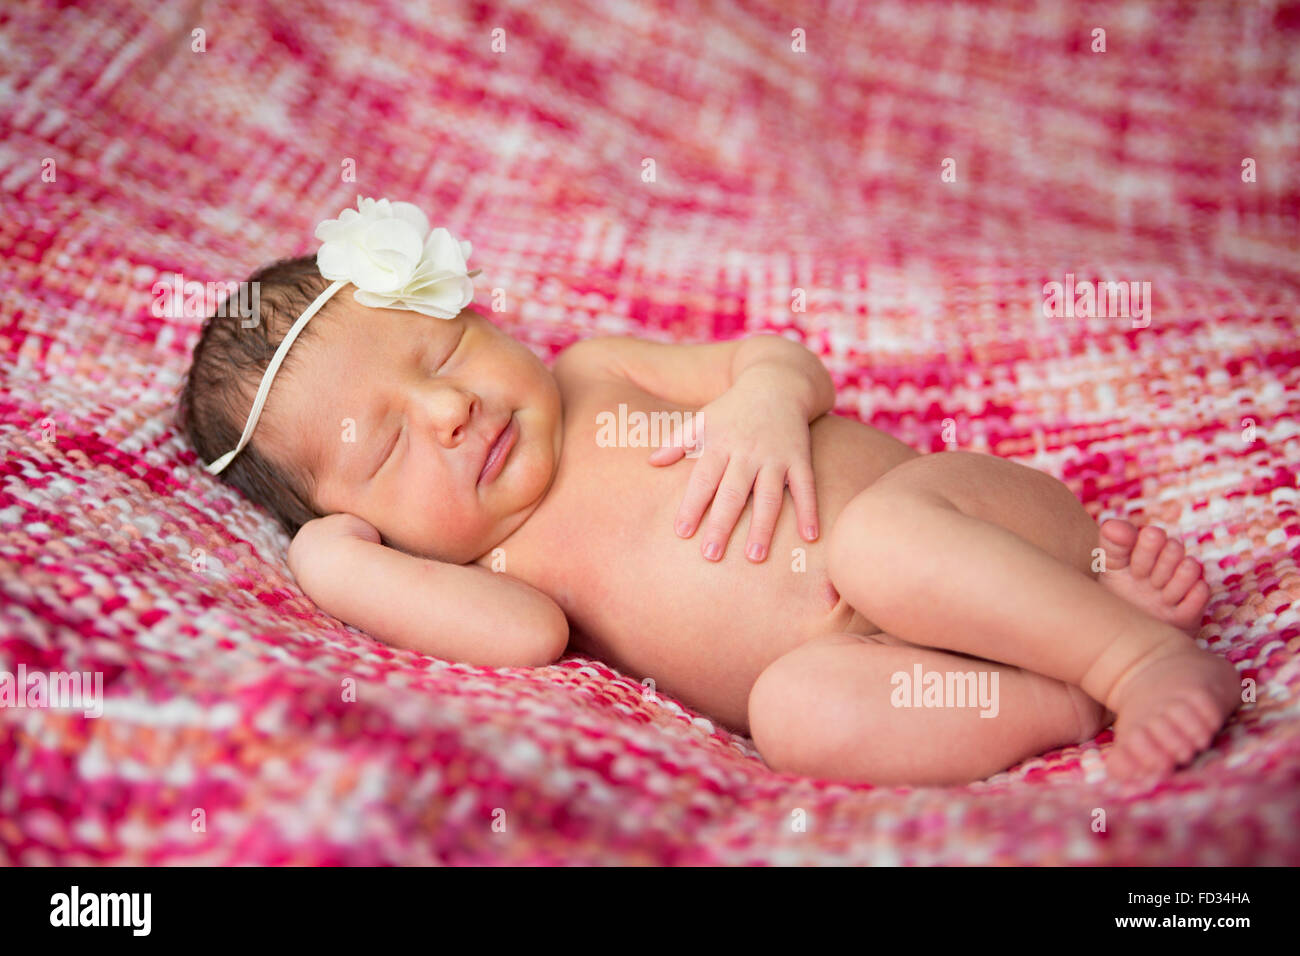 Fotos de Bebé recién nacido niña en manta rosa acostado en la